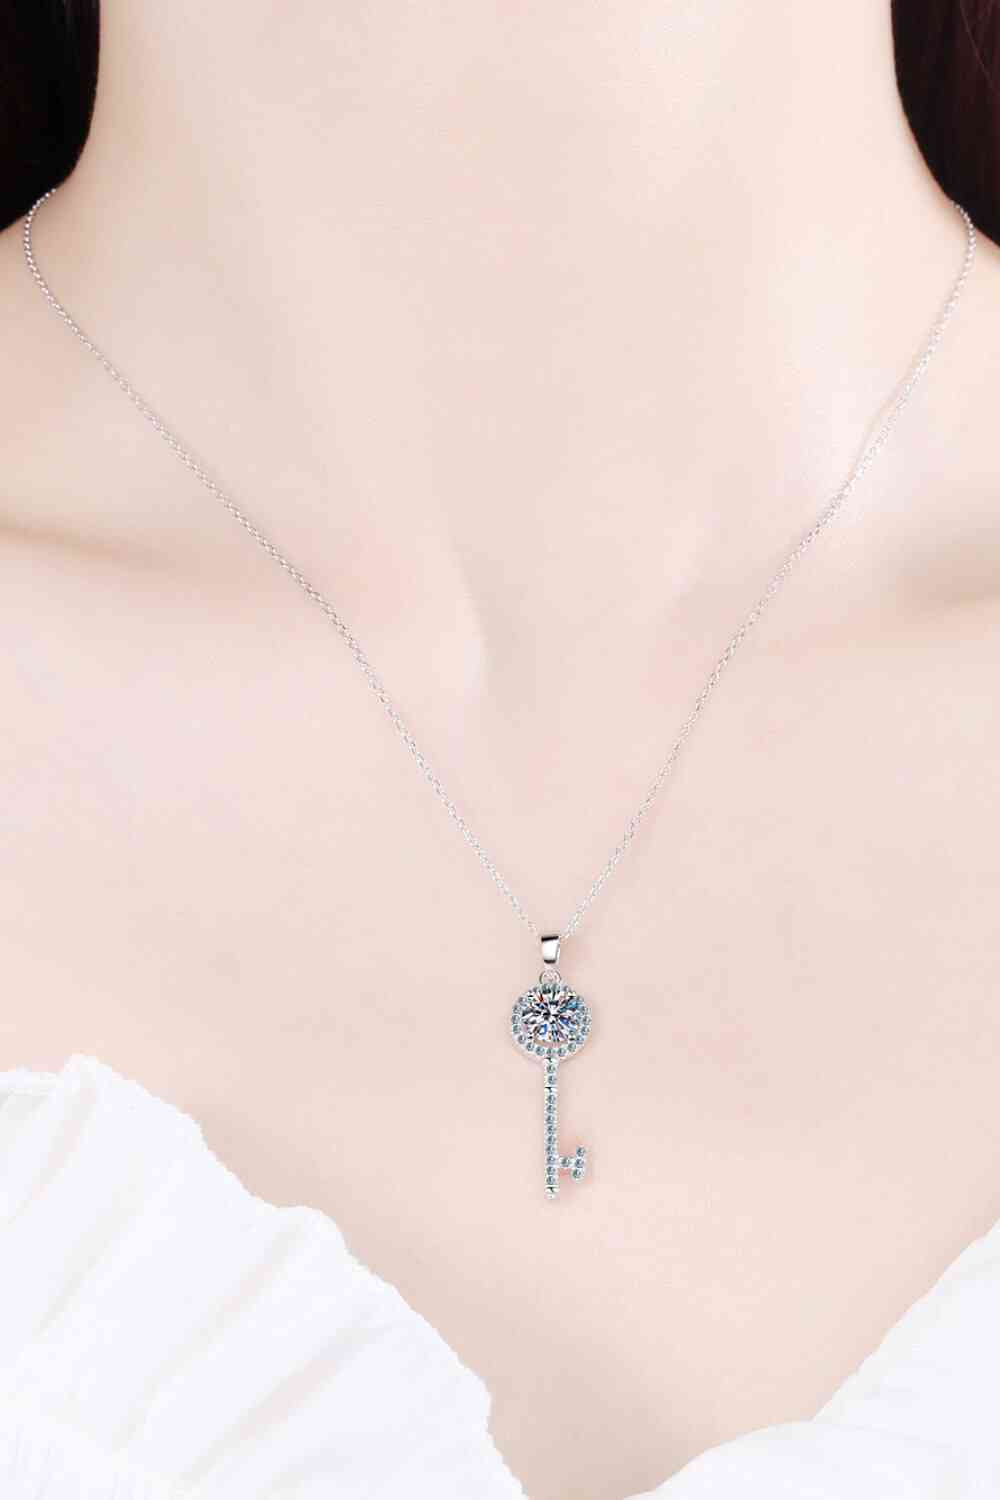 Bezaubernde Halskette mit Schlüsselanhänger aus Moissanit